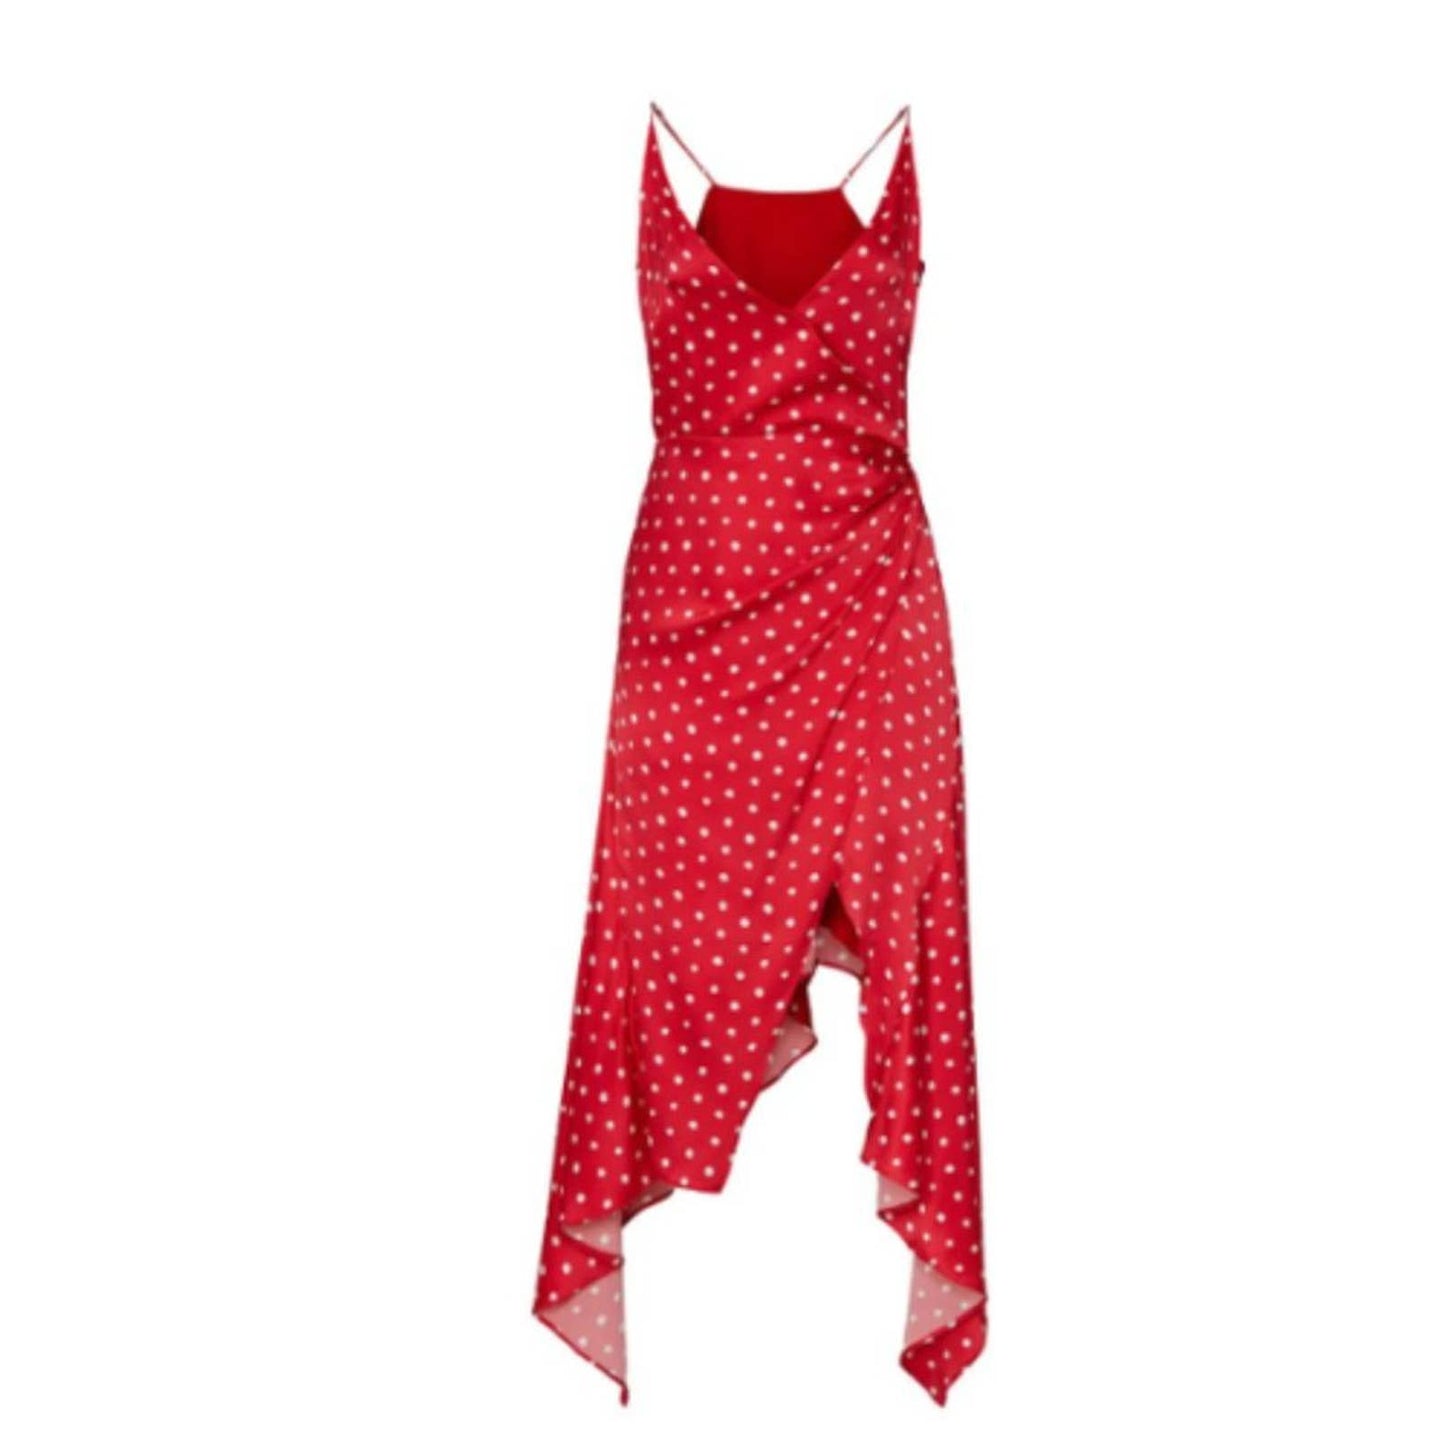 Haney Olivia Dress Red & White Polka Dot in Size 10